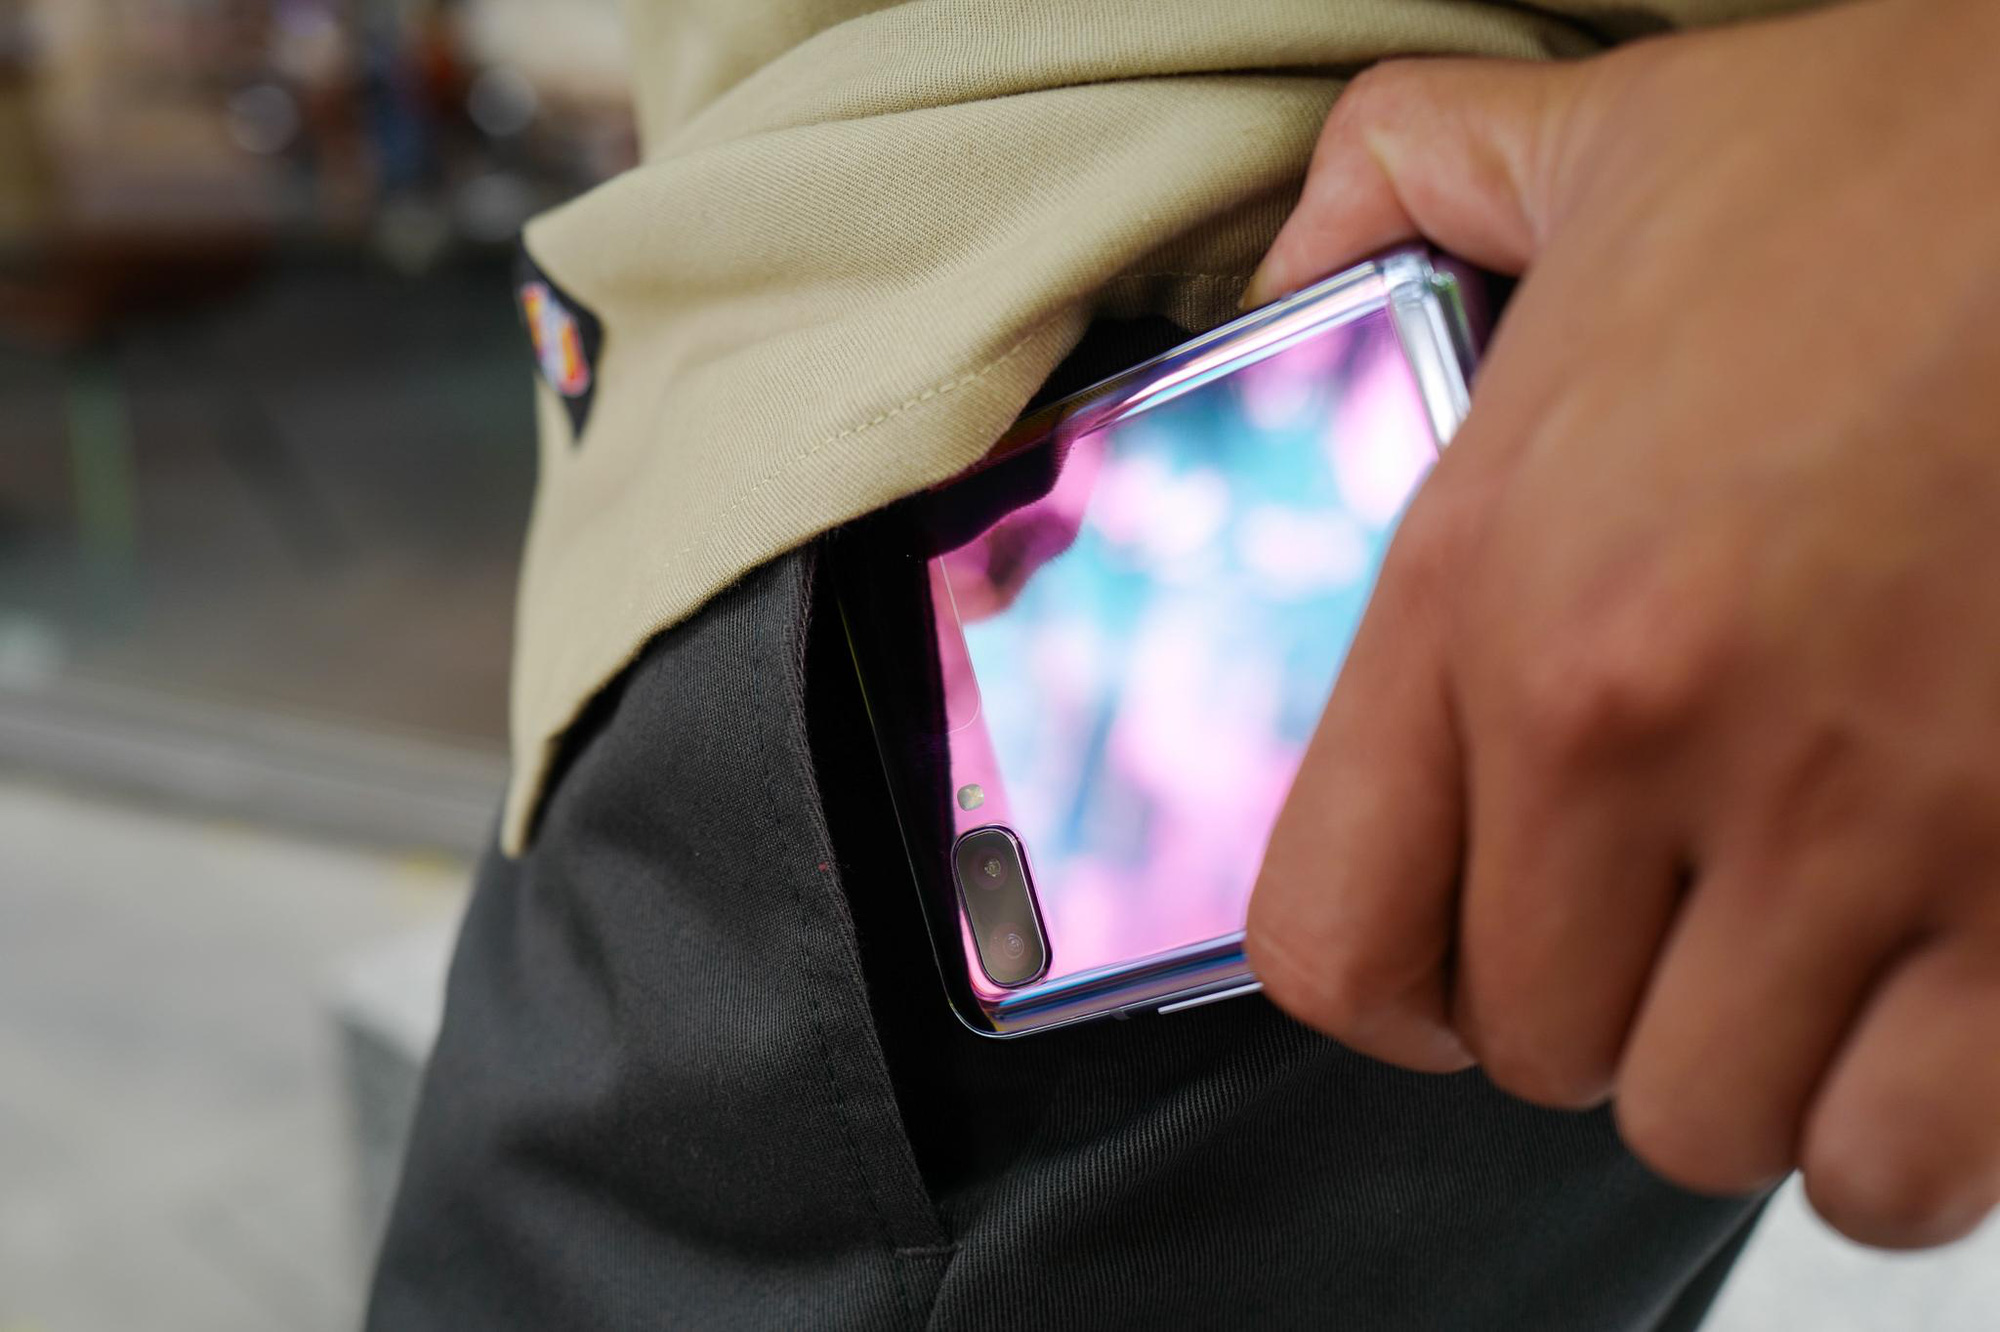 Chỉ thêm khả năng “gập” nhưng Galaxy Z Flip đã thay đổi hoàn toàn cách chúng ta nhìn nhận về điện thoại như thế nào? - Ảnh 3.